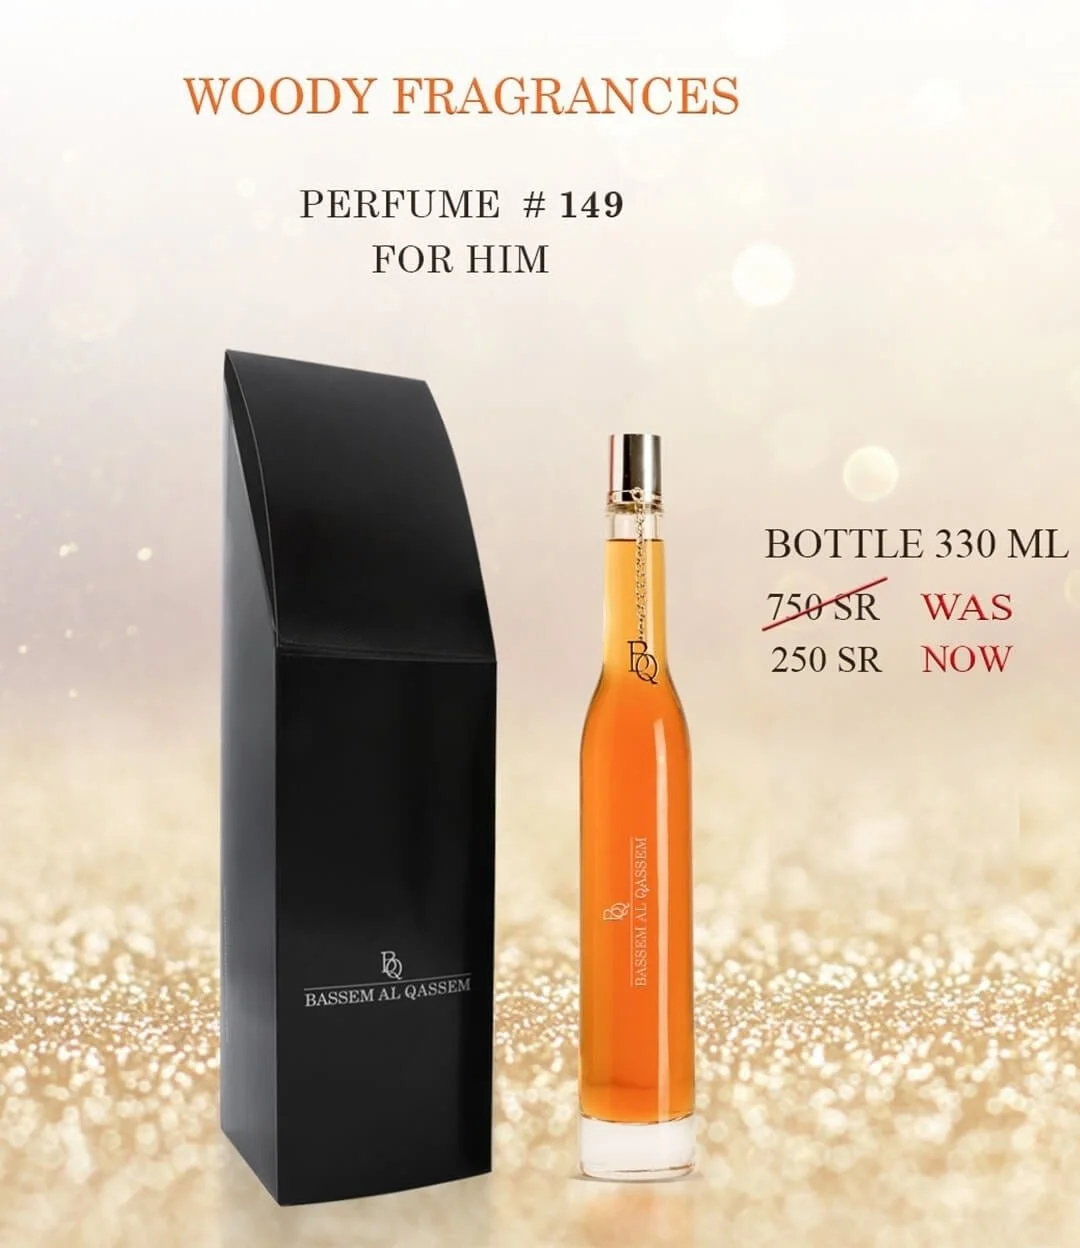 Perfume #149 Woody Fragrance for Him by Bassem Al Qassem 